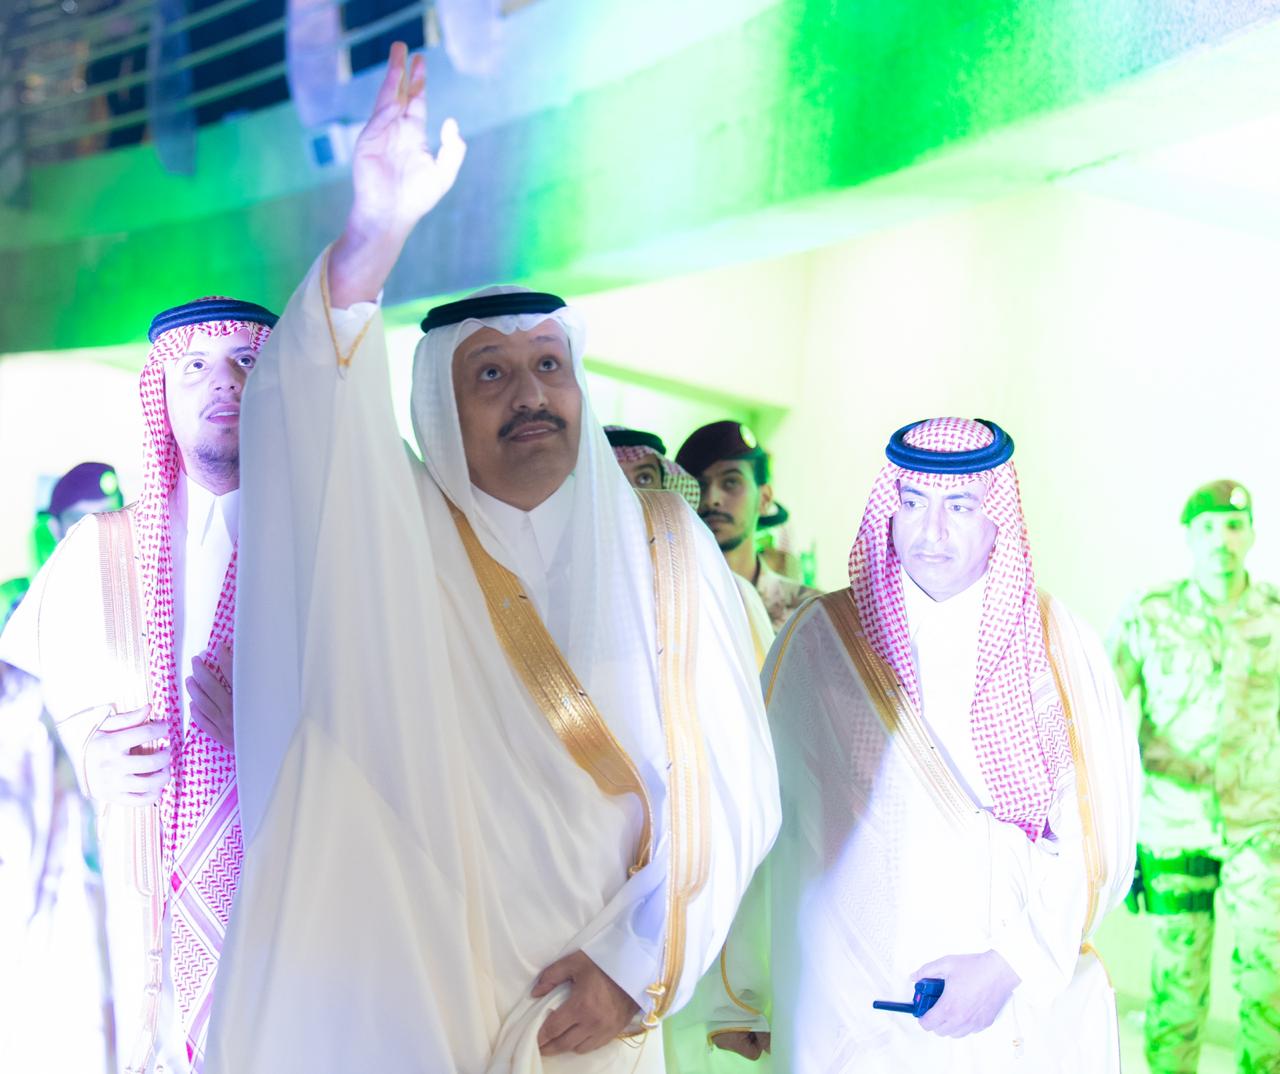 سمو أمير منطقة الباحة يرعى حفل الأهالي  بمناسبة عيد الفطر المبارك